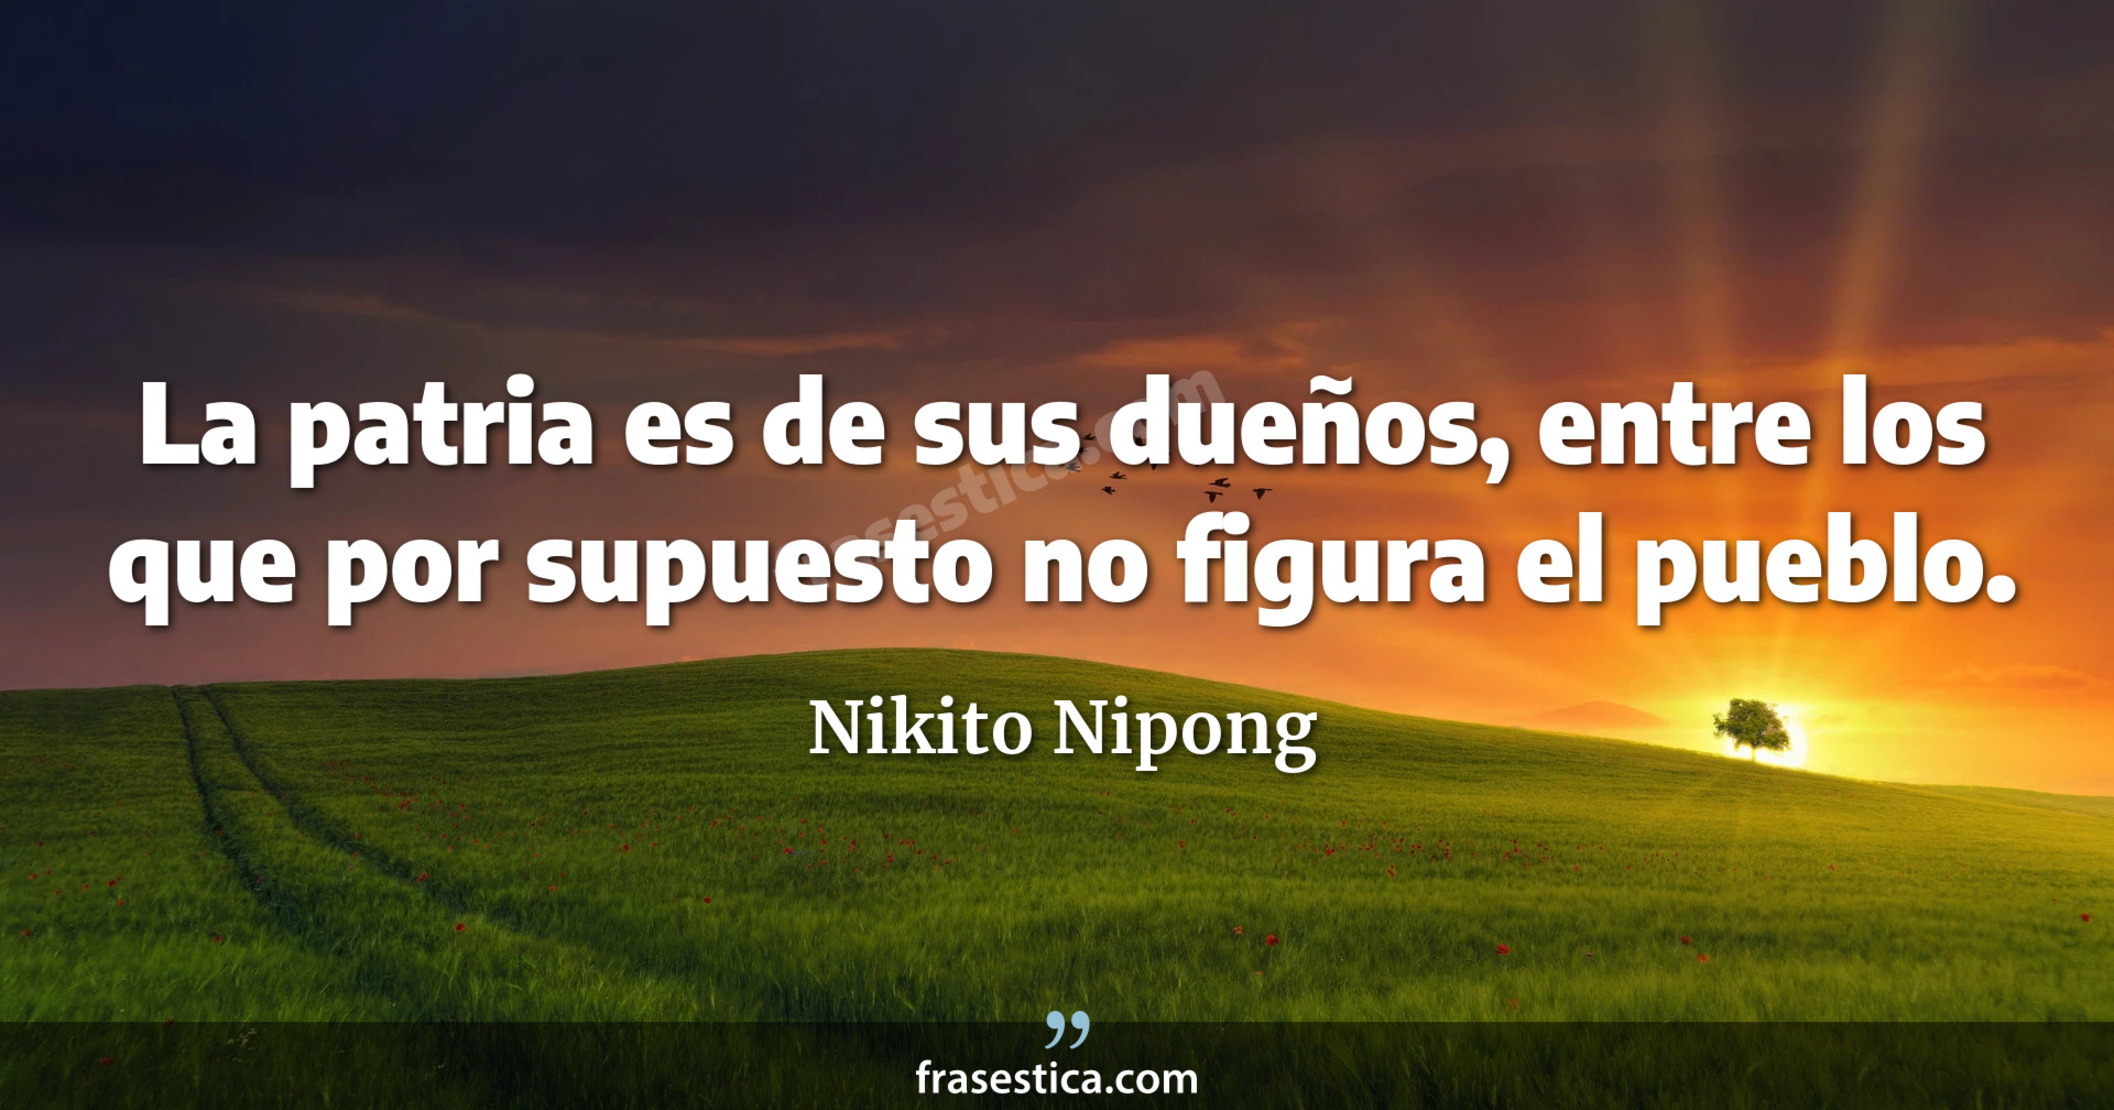 La patria es de sus dueños, entre los que por supuesto no figura el pueblo. - Nikito Nipong